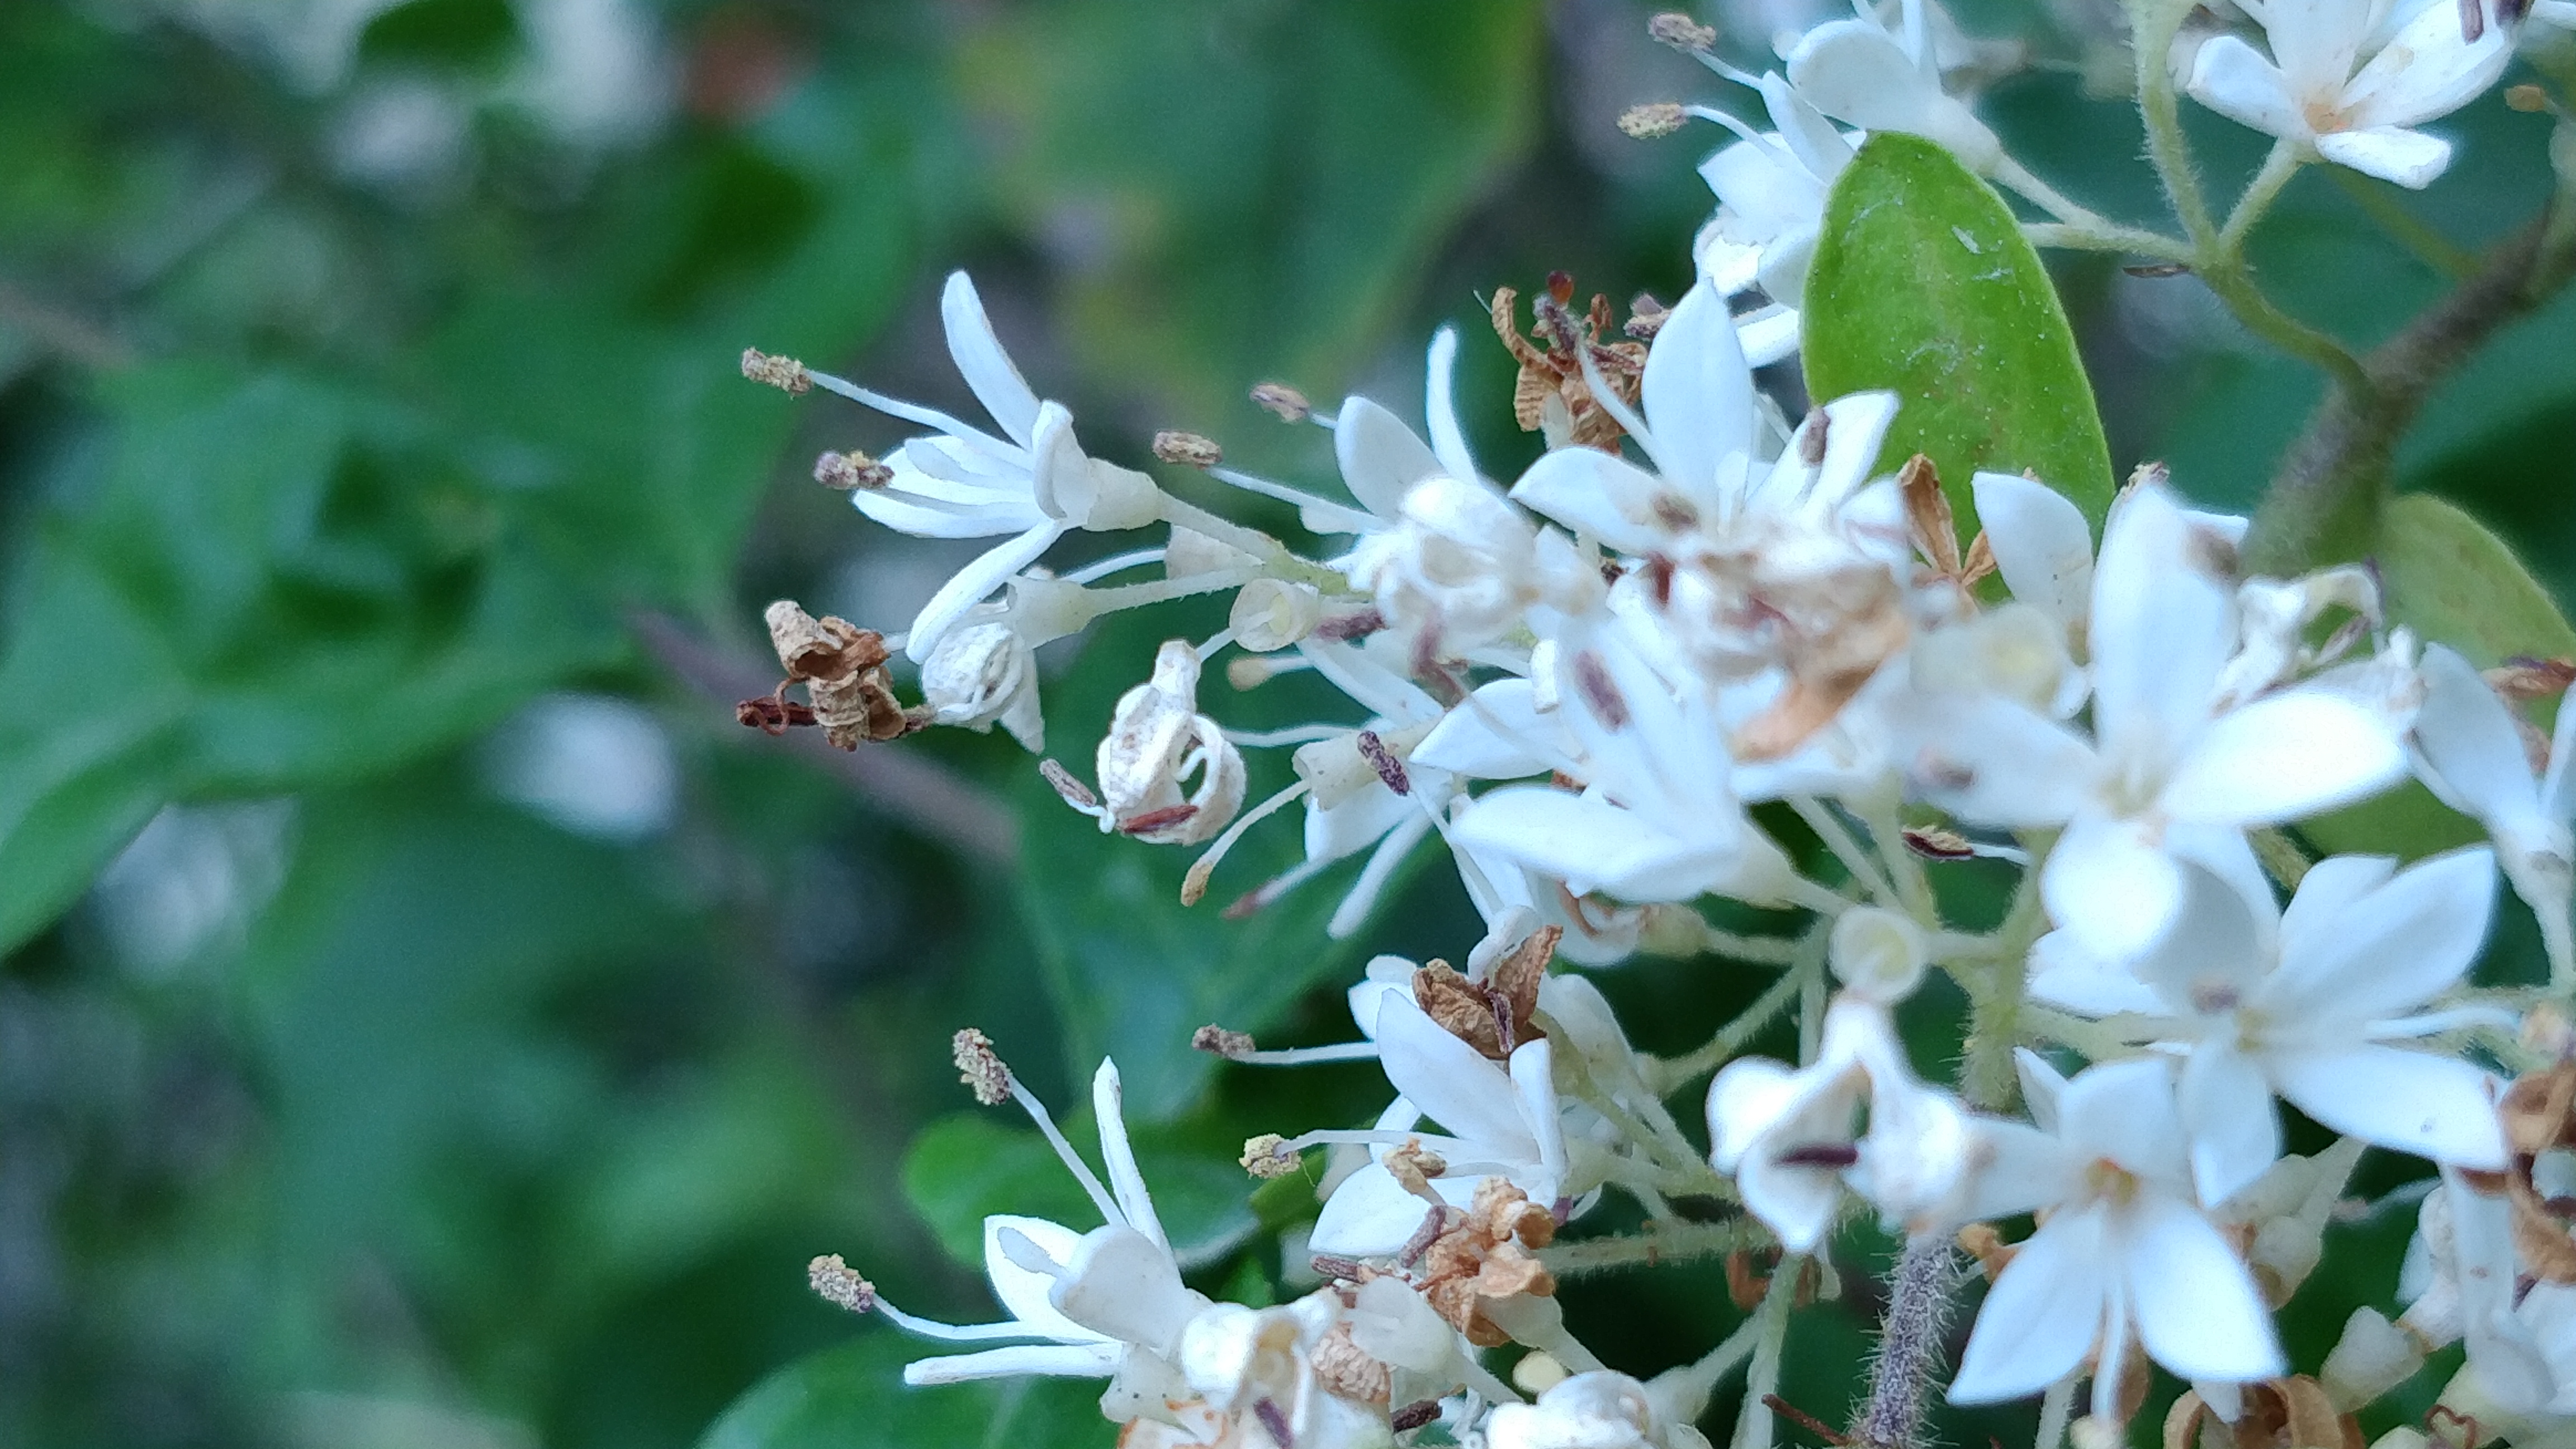 家门口的这棵树开出了好看的小白花,香气扑鼻,你认识这种花吗?